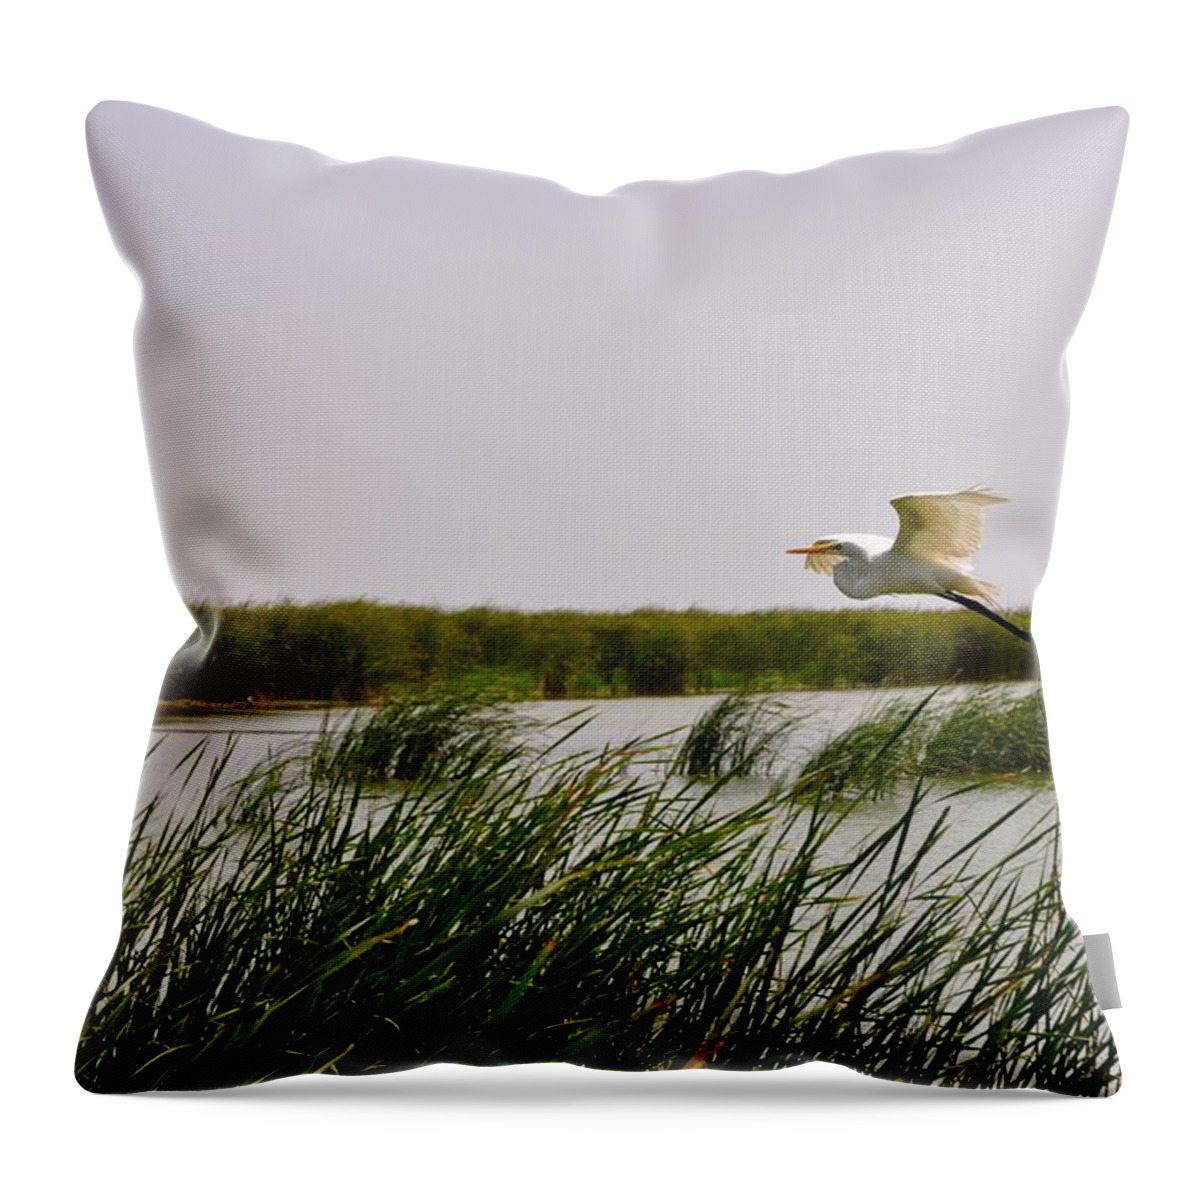 Crane Bird Print Throw Pillow featuring the photograph Graceful Flight by Kristina Deane